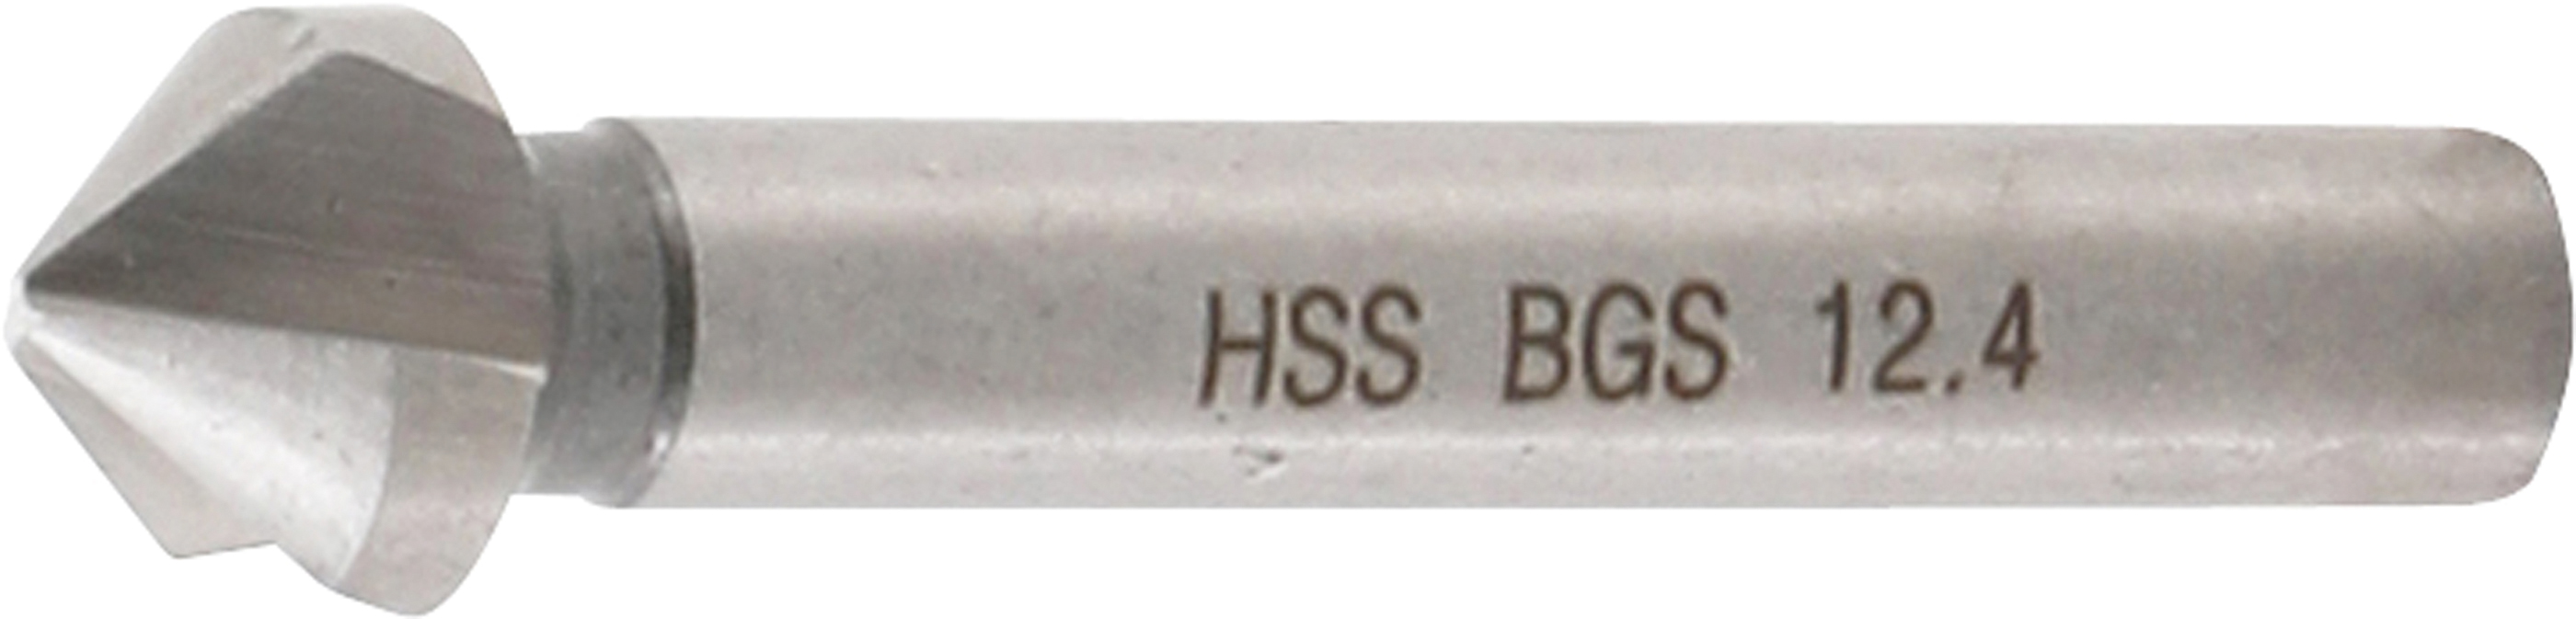 BGS 1997-4 Freza pentru zencuit HSS, DIN 335 Forma C,  Ø 12,4 mm